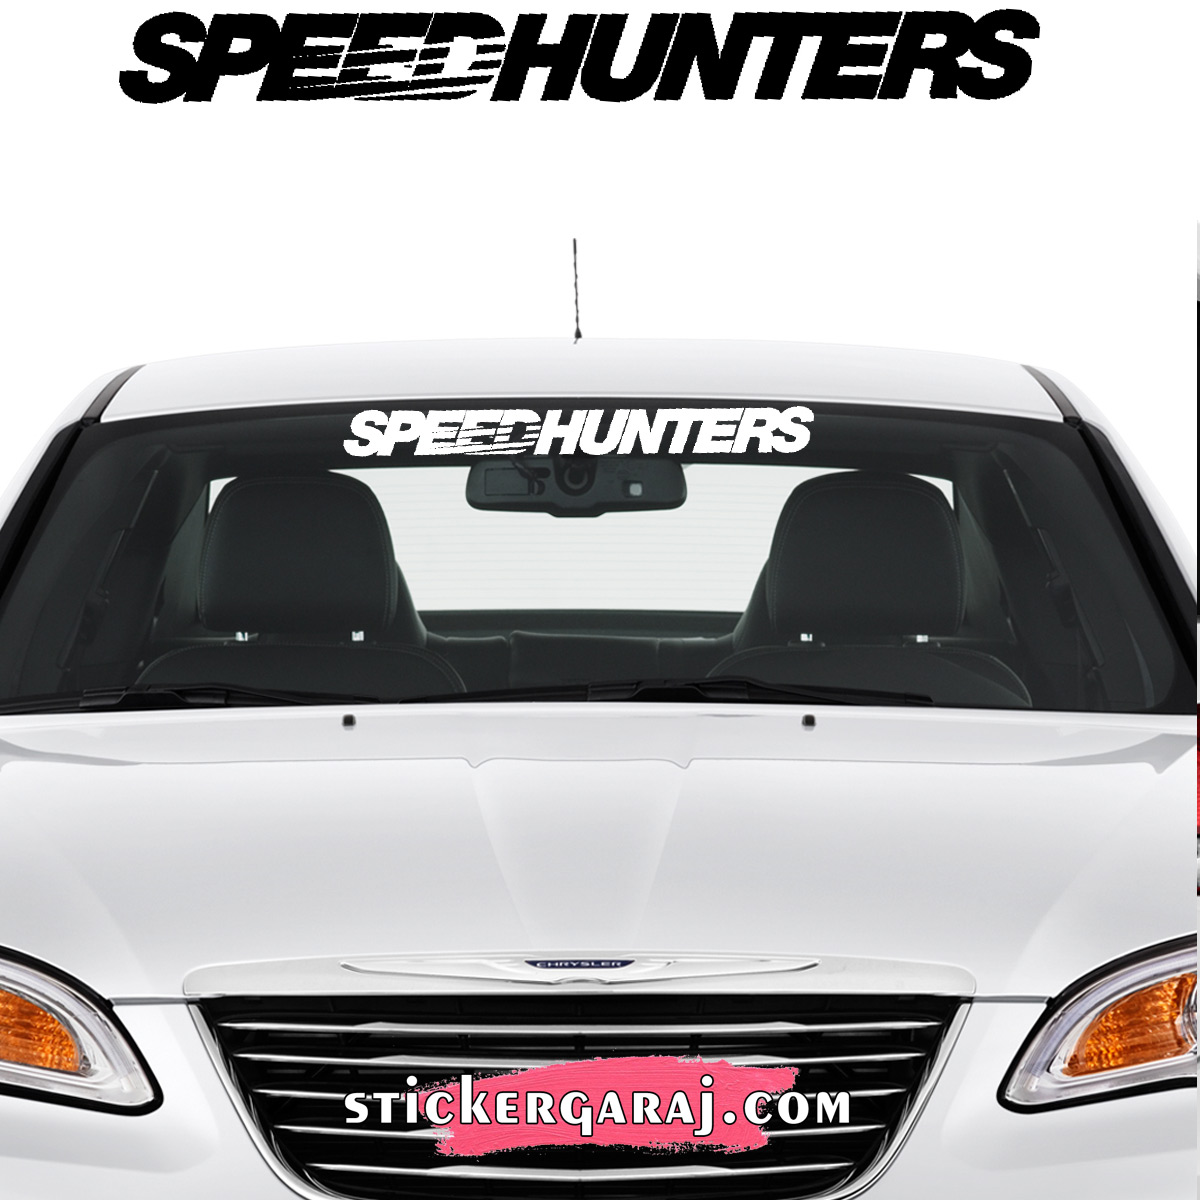 Mercedes oto sticker 1 - Mitshubishi cam sticker - speedhunters